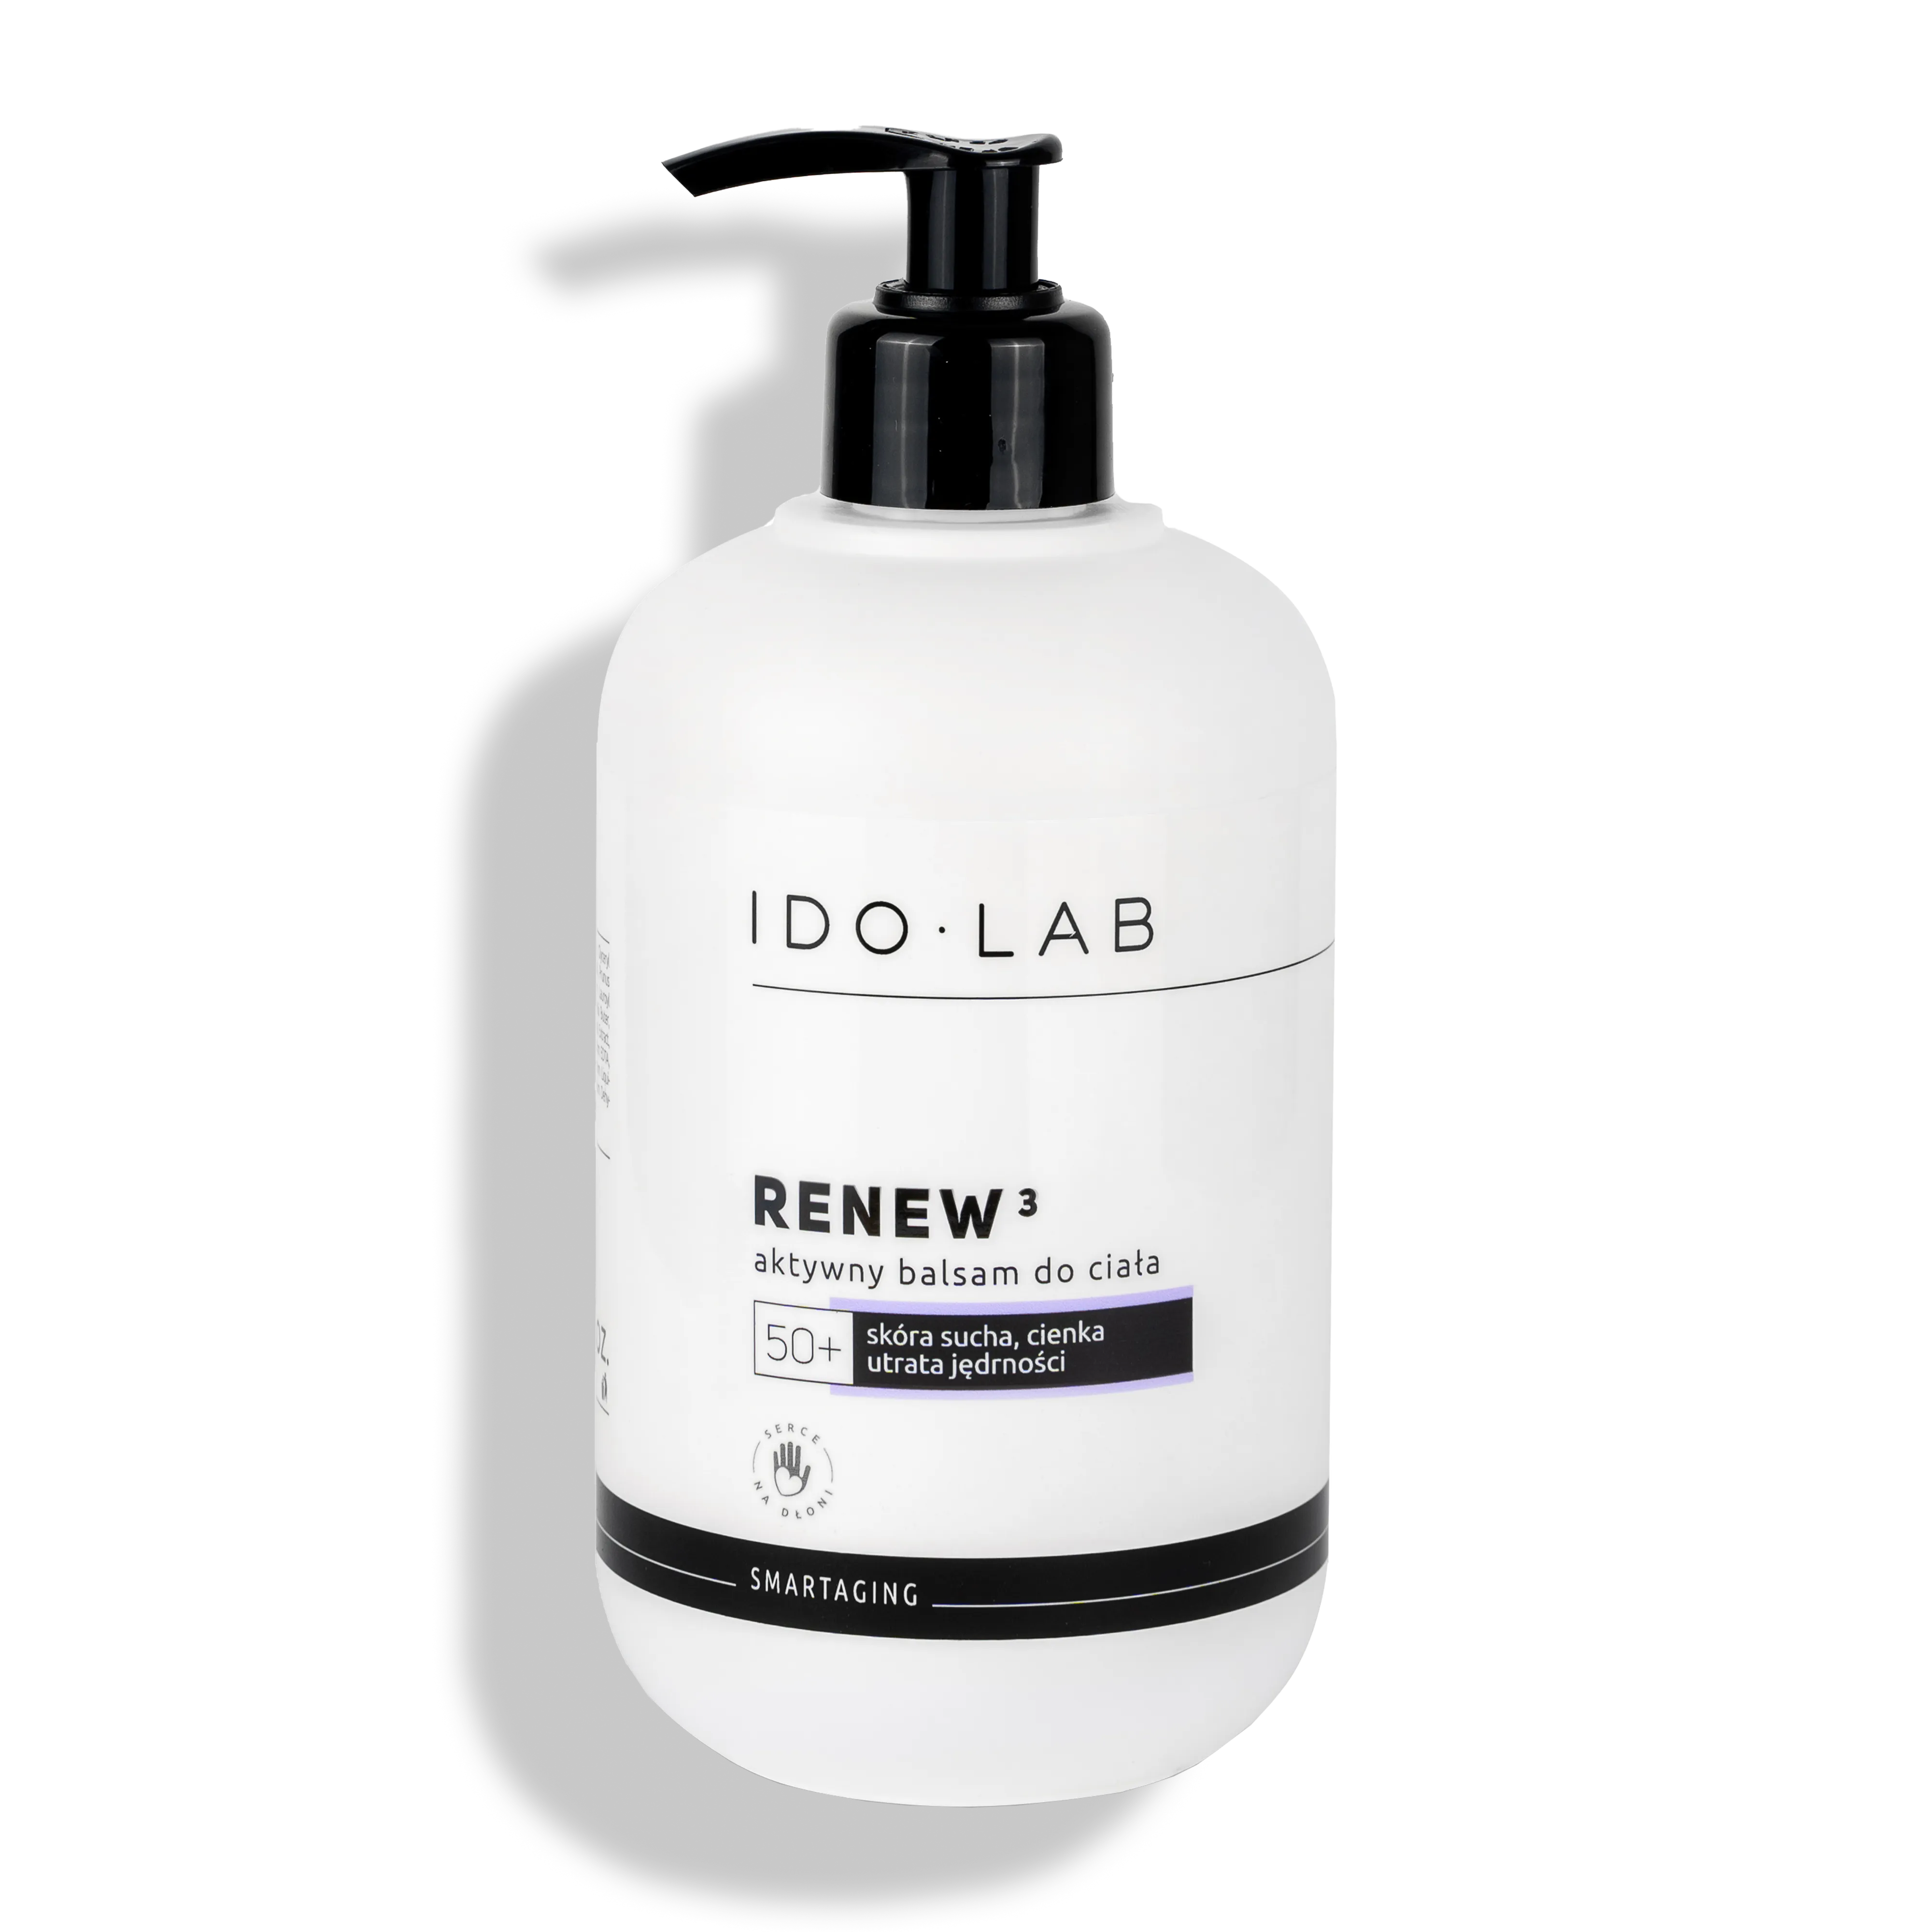 Ido Lab Renew3 aktywny balsam do skóry dojrzalej 50+, 500 ml